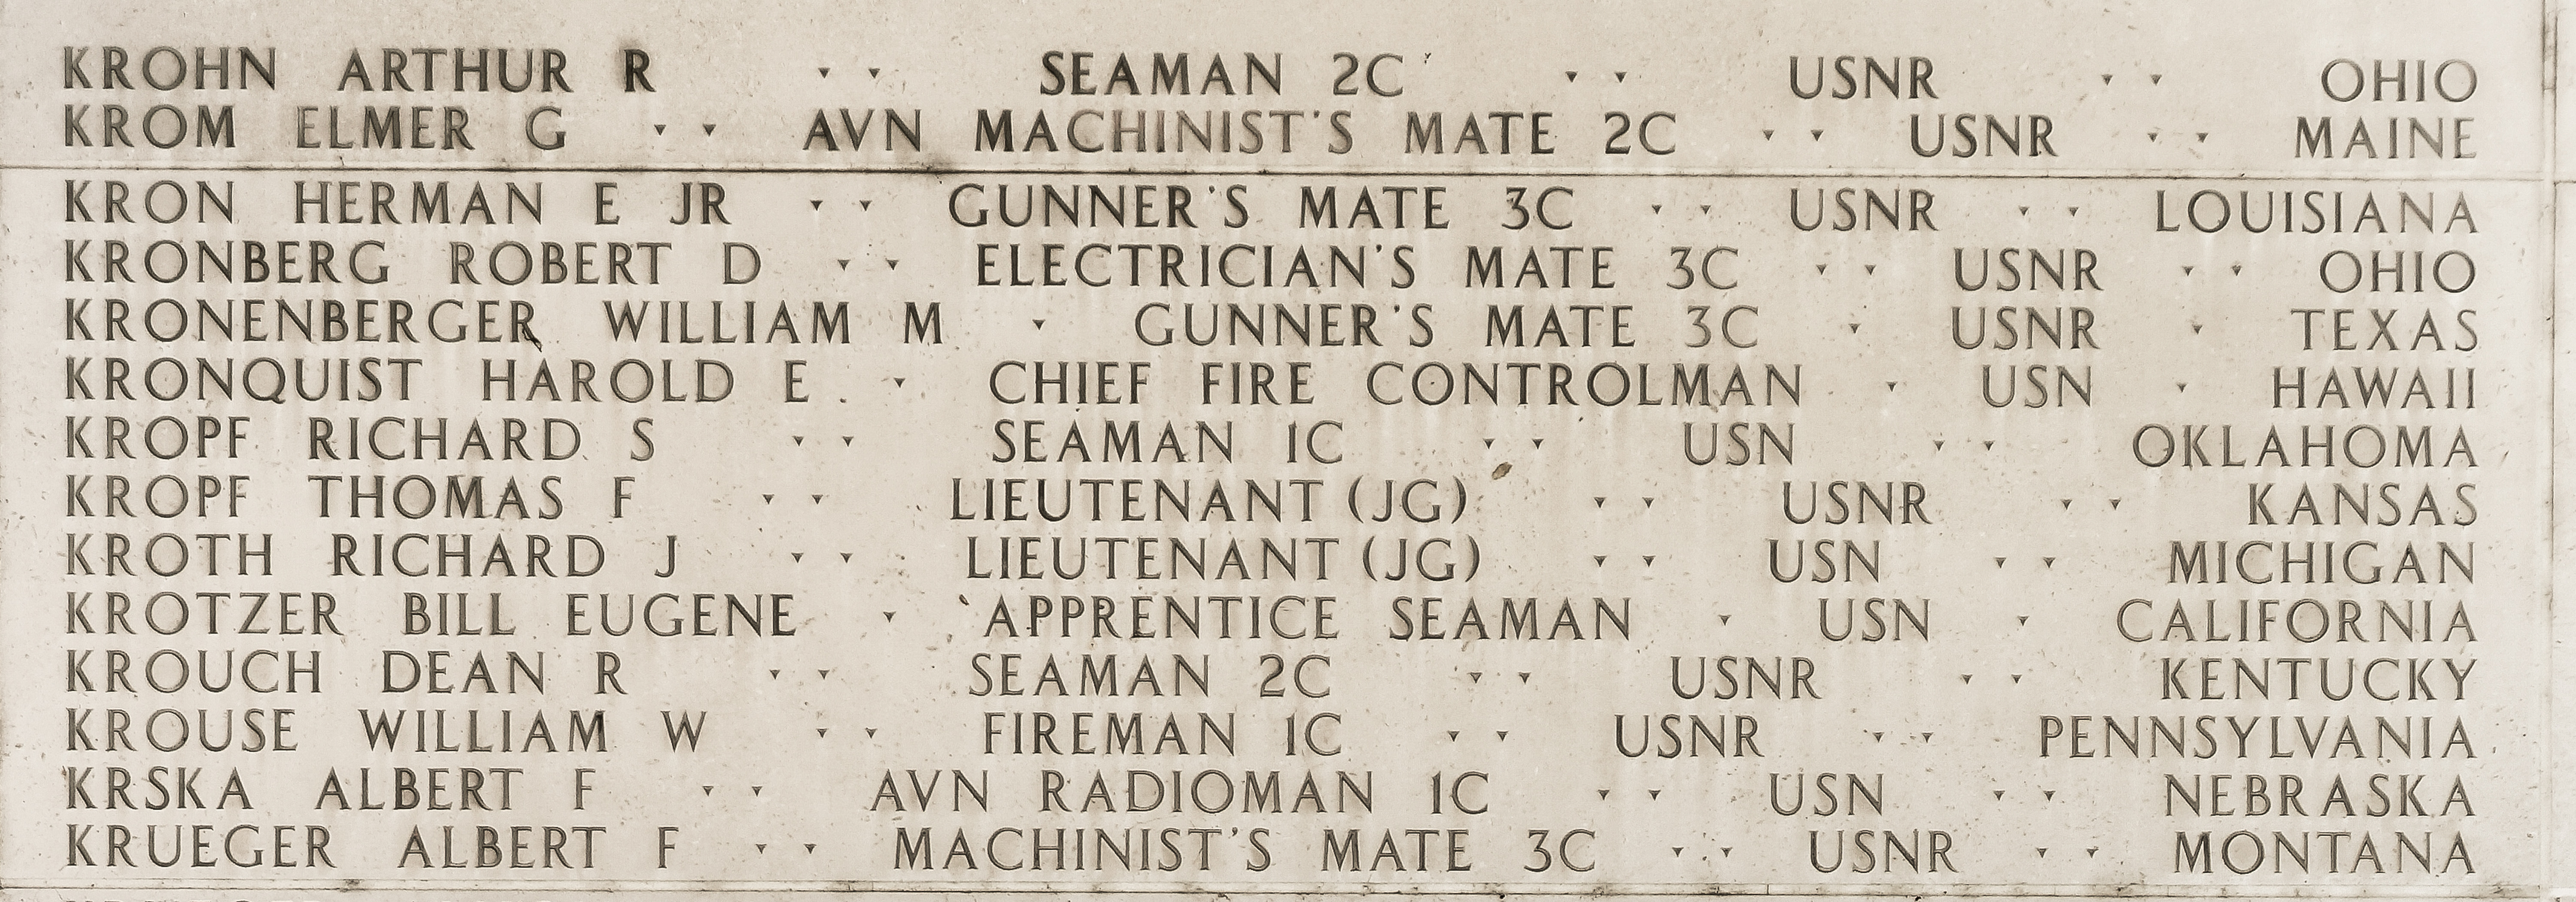 Herman E. Kron, Gunner's Mate Third Class